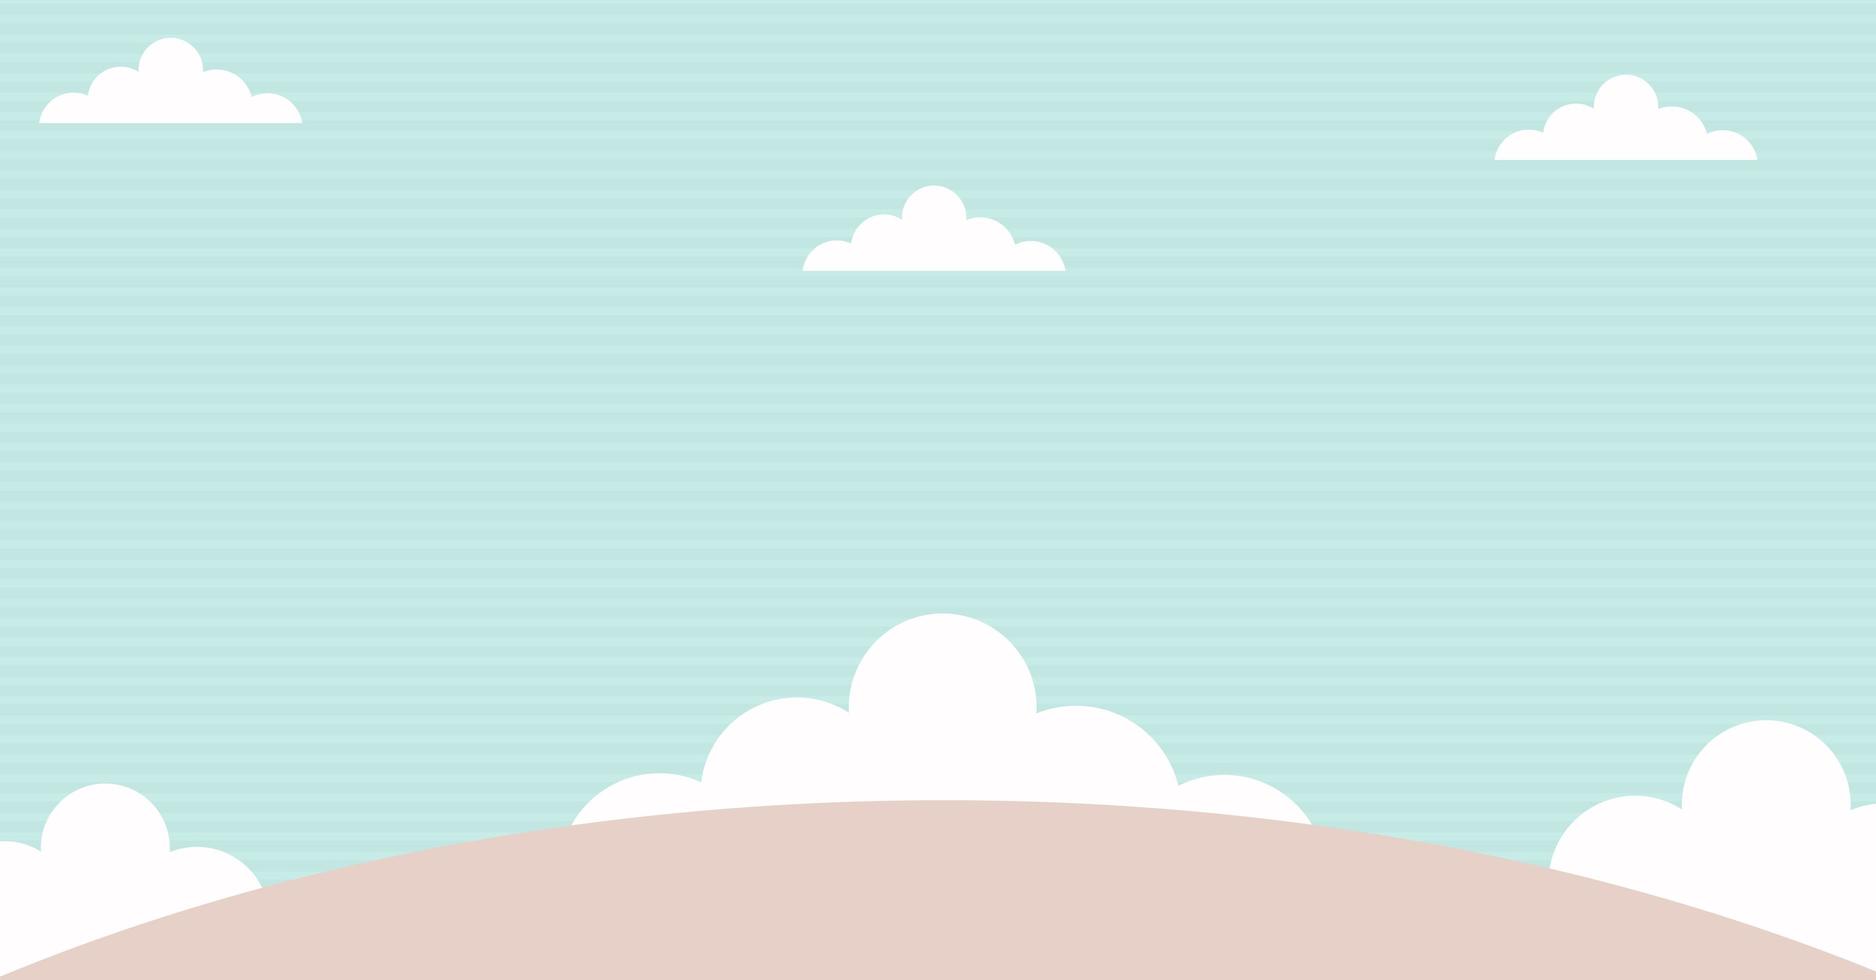 dibujos animados de nubes kawaii abstractas en el cielo azul, fondo. concepto para niños y jardines de infancia o presentación. foto